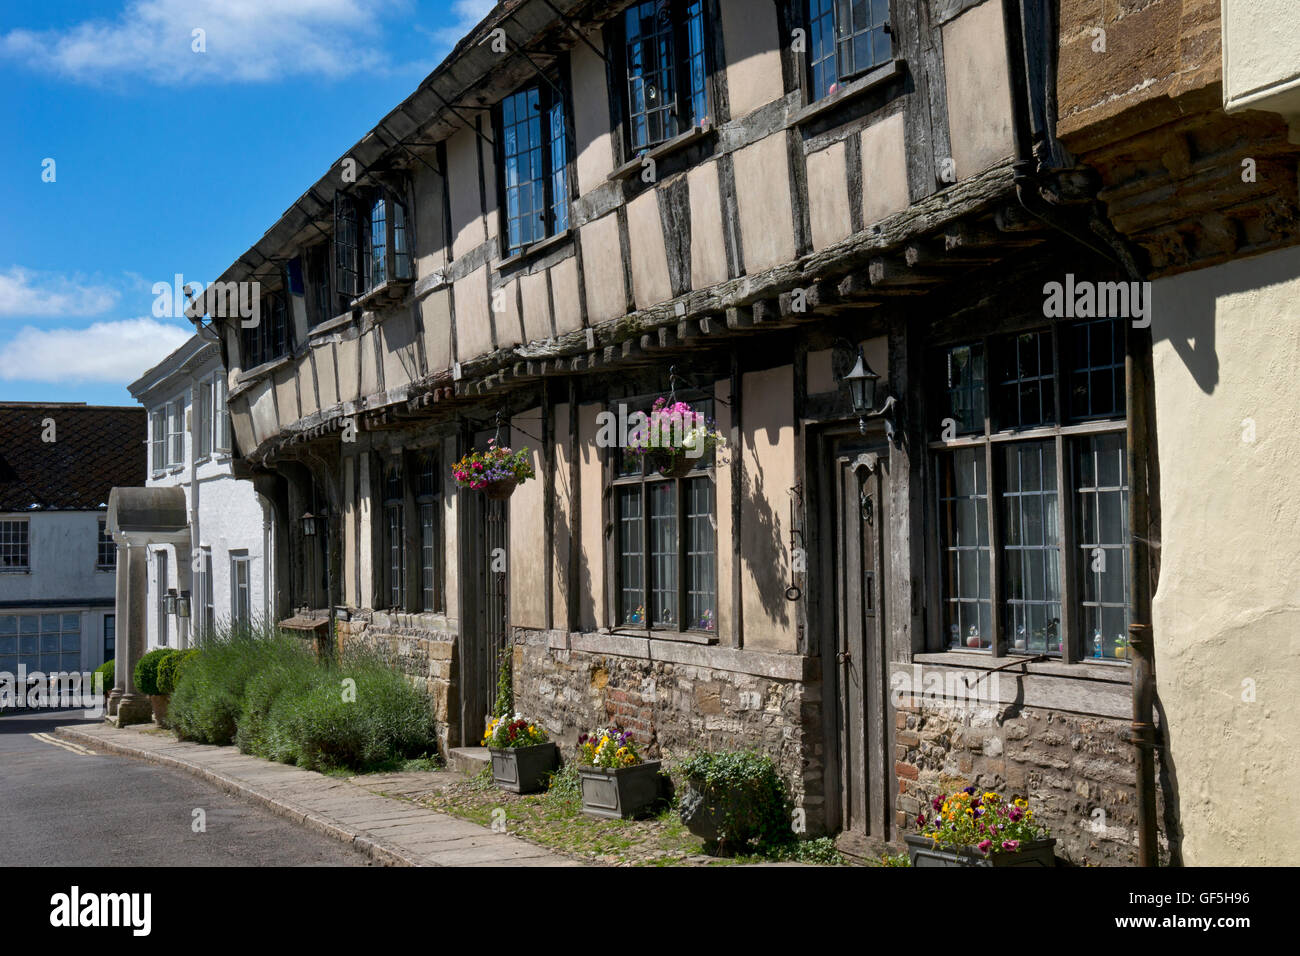 Village de vieux bâtiments, de Cerne Abbas Dorset, Angleterre Banque D'Images